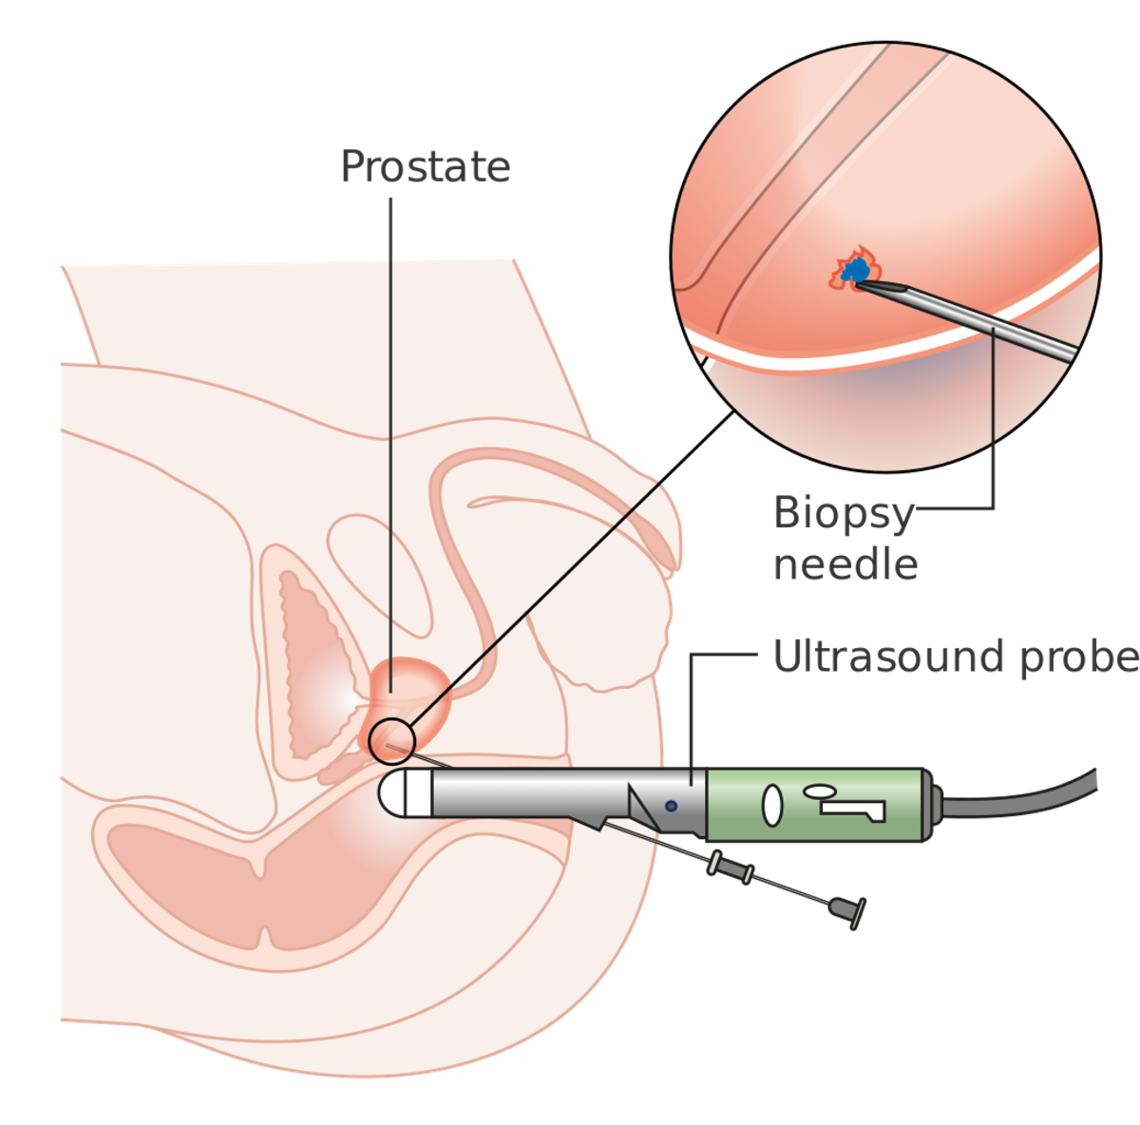 A prostate biopsy. 